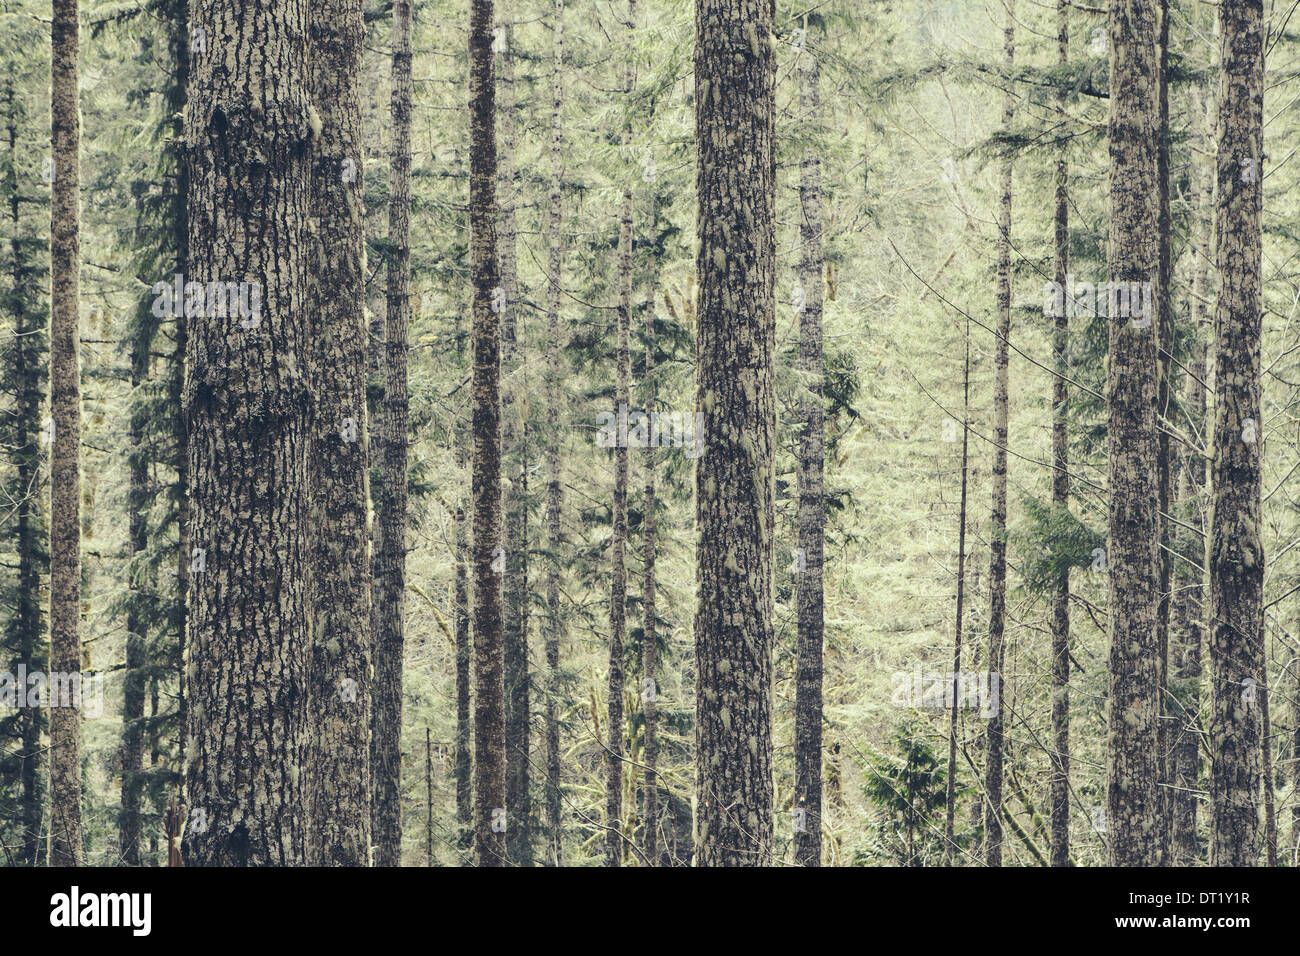 Ein dichter Wald von grünem Moos bedeckt Bäume der alten Zeder Tannen- und Hemlock in einem nationalen Wald in Washington USA Stockfoto